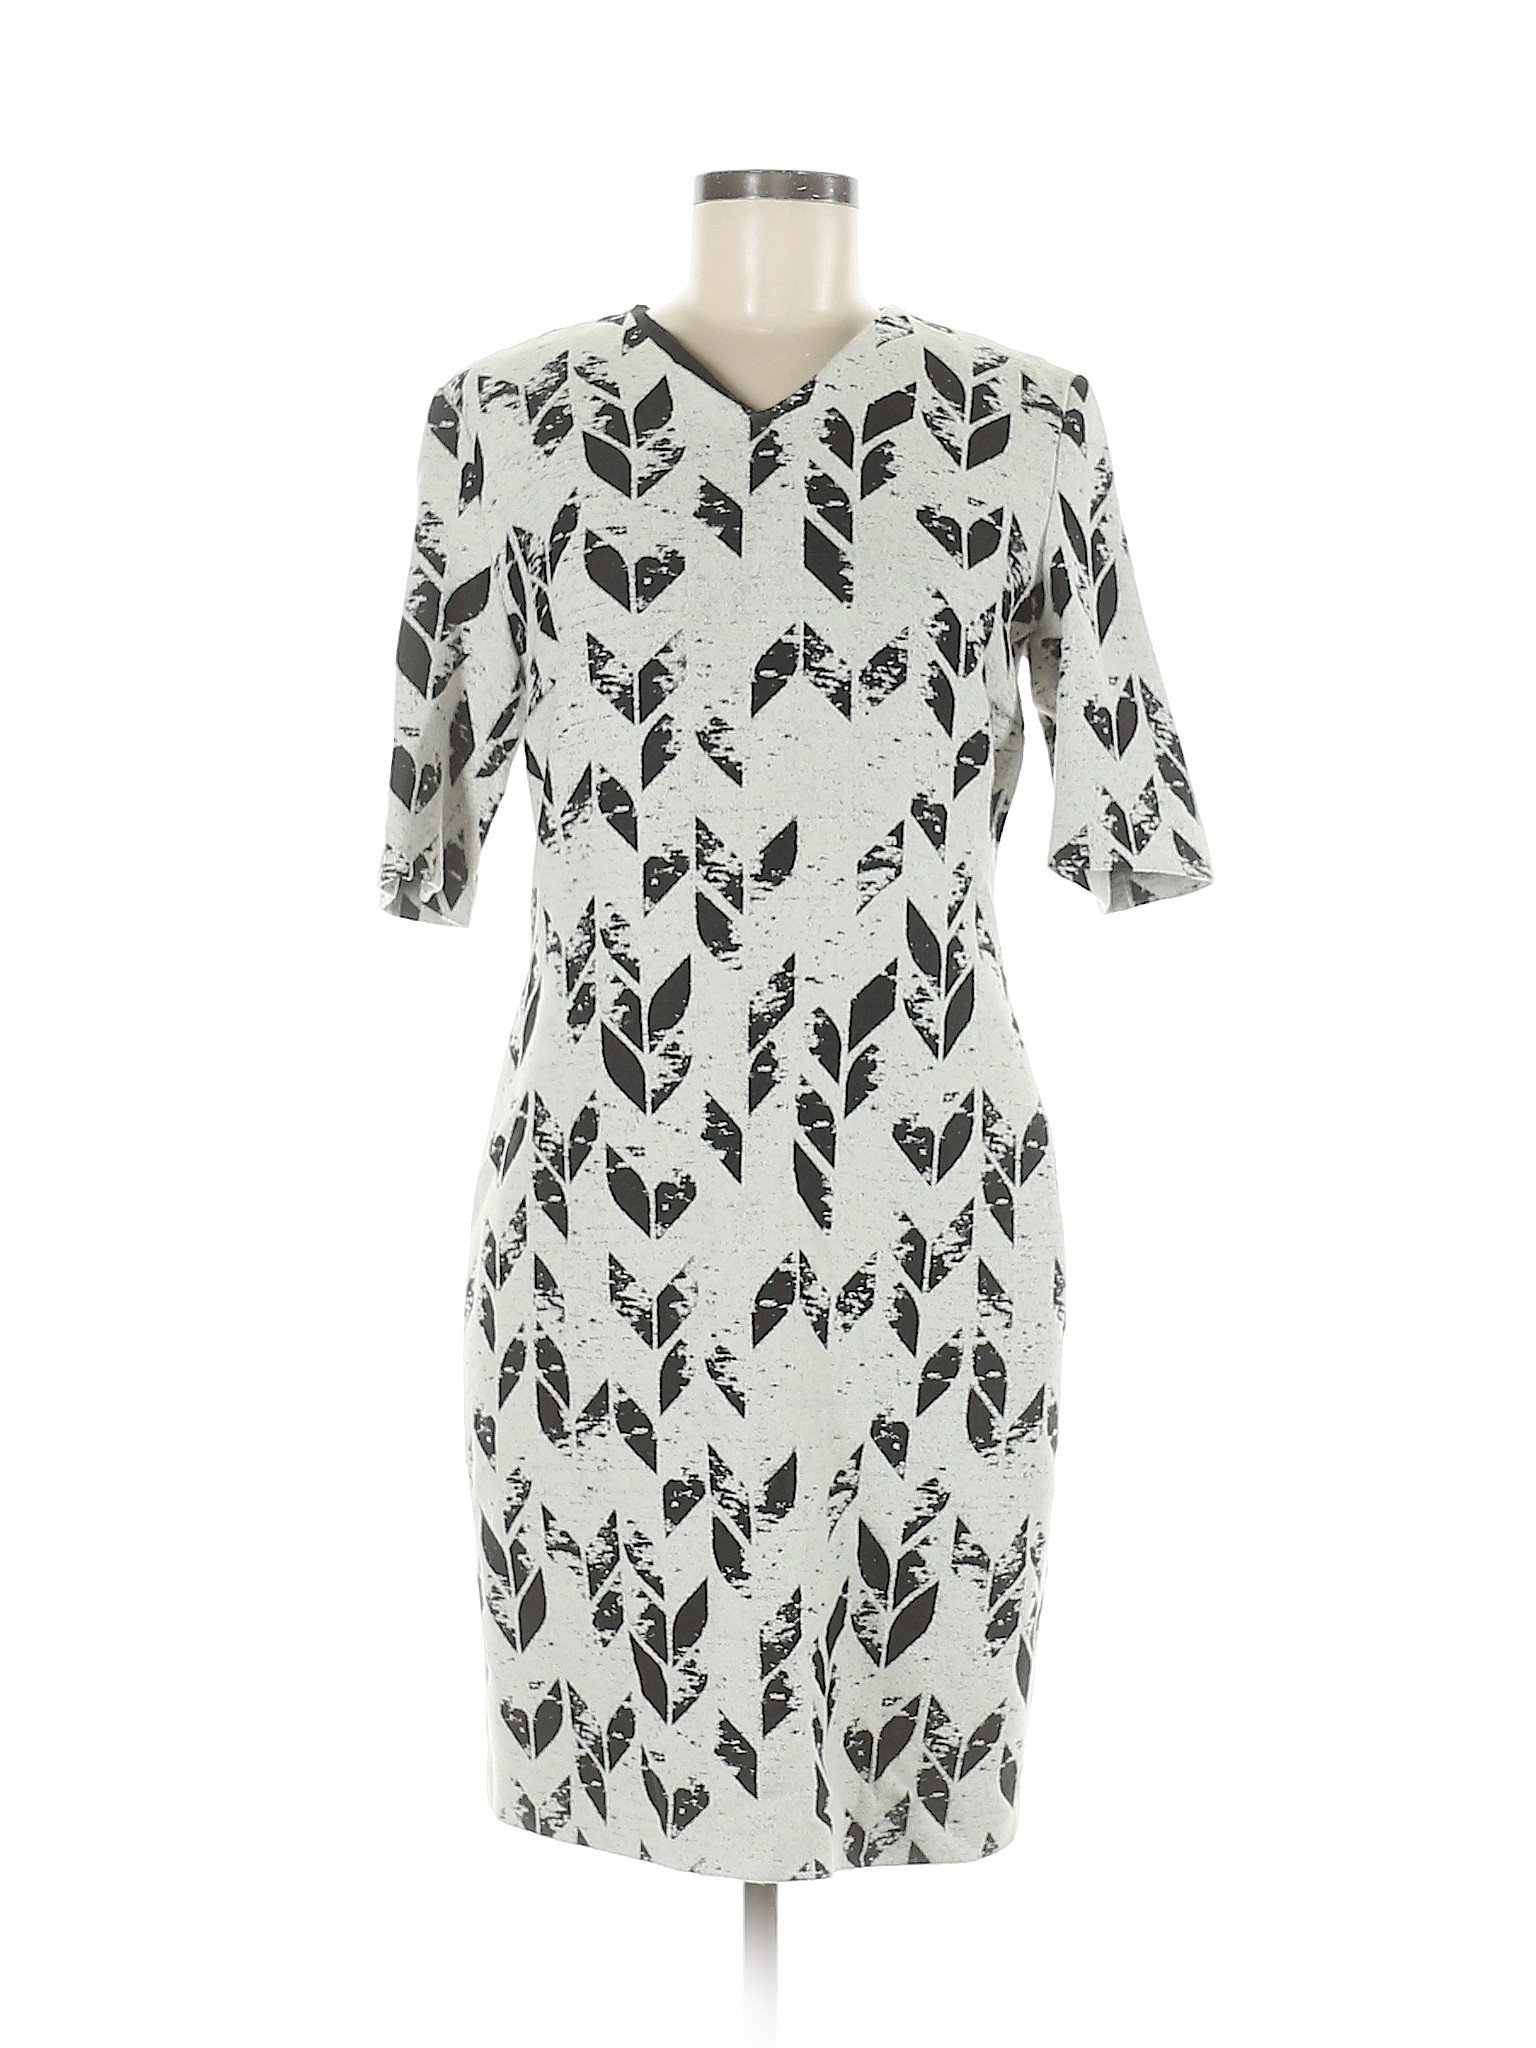 BOSS by HUGO BOSS Women Gray Casual Dress 8 | eBay